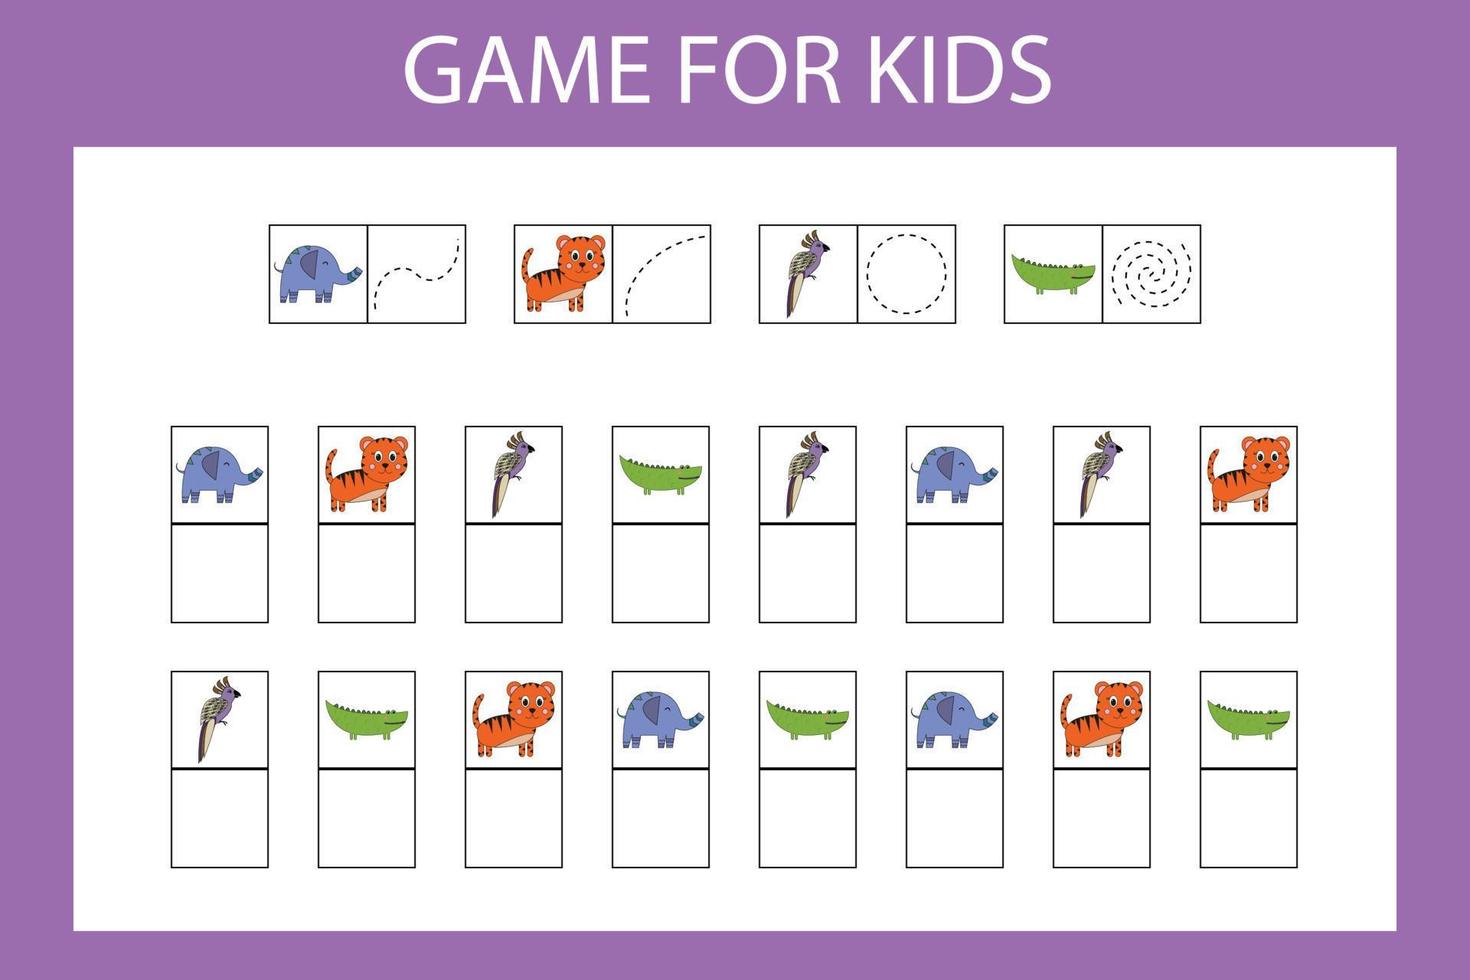 juego educativo para niños en edad preescolar. ilustración vectorial ingrese el carácter deseado en las celdas de acuerdo con la imagen. vector